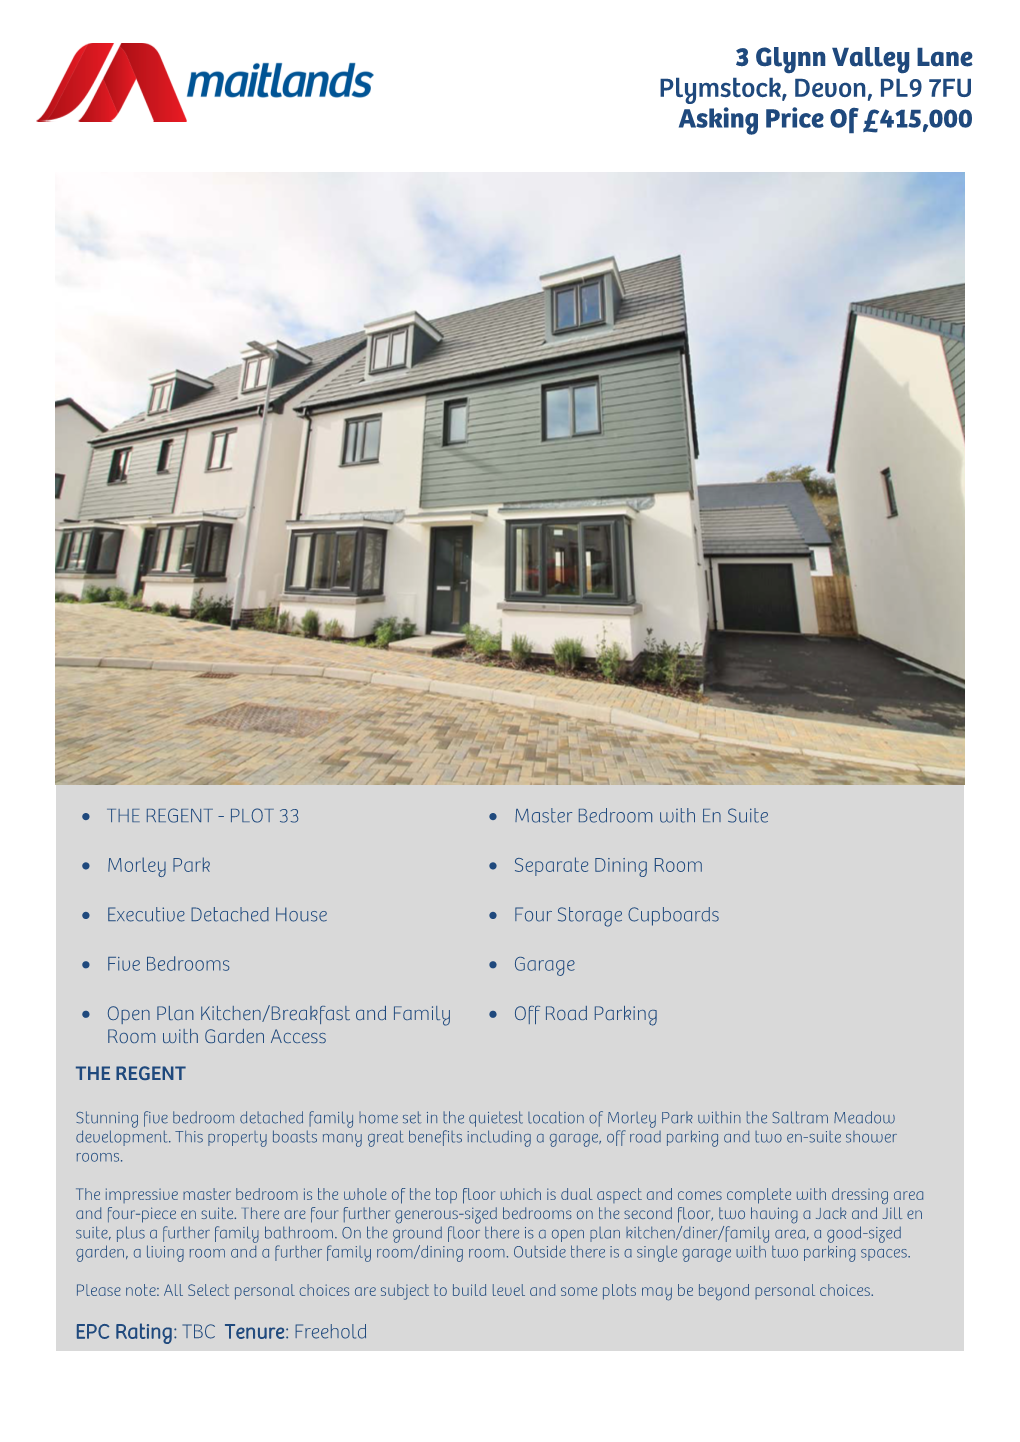 3 Glynn Valley Lane Plymstock, Devon, PL9 7FU Asking Price of £415,000